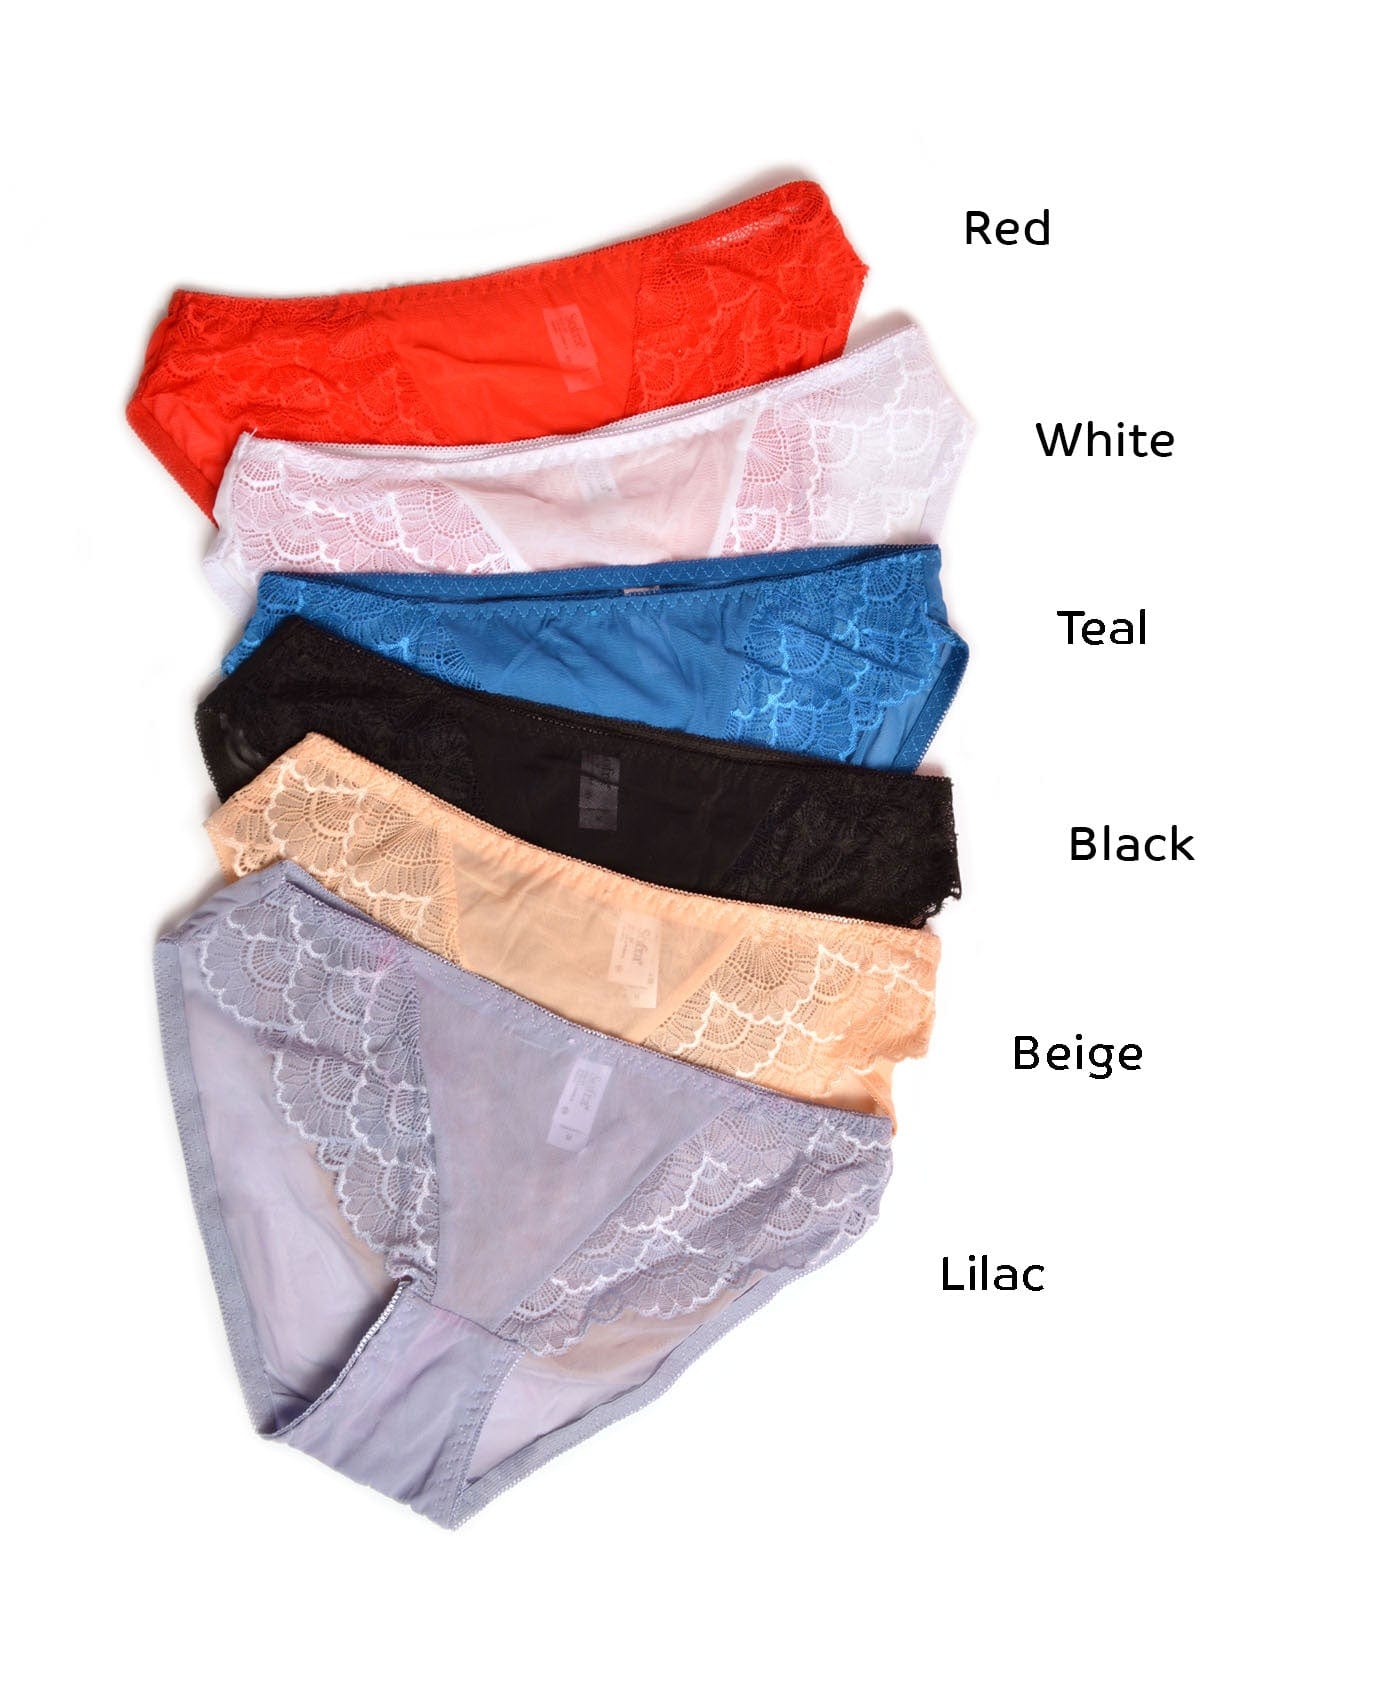 Buy Bag Of Panties Online, Panties